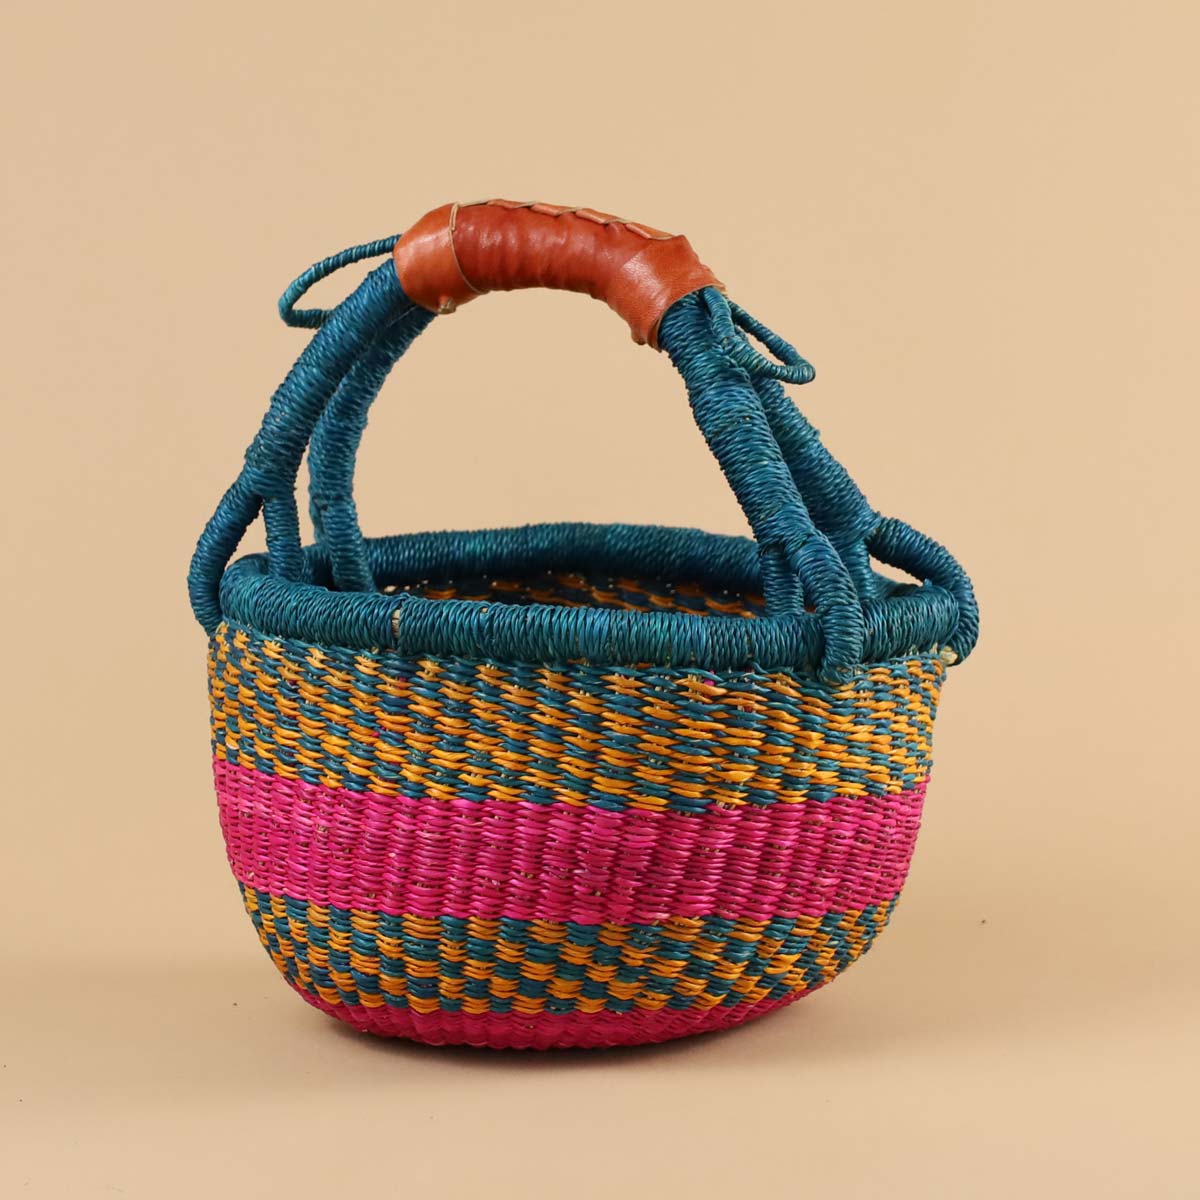 Merriment, Child's Bolga Basket